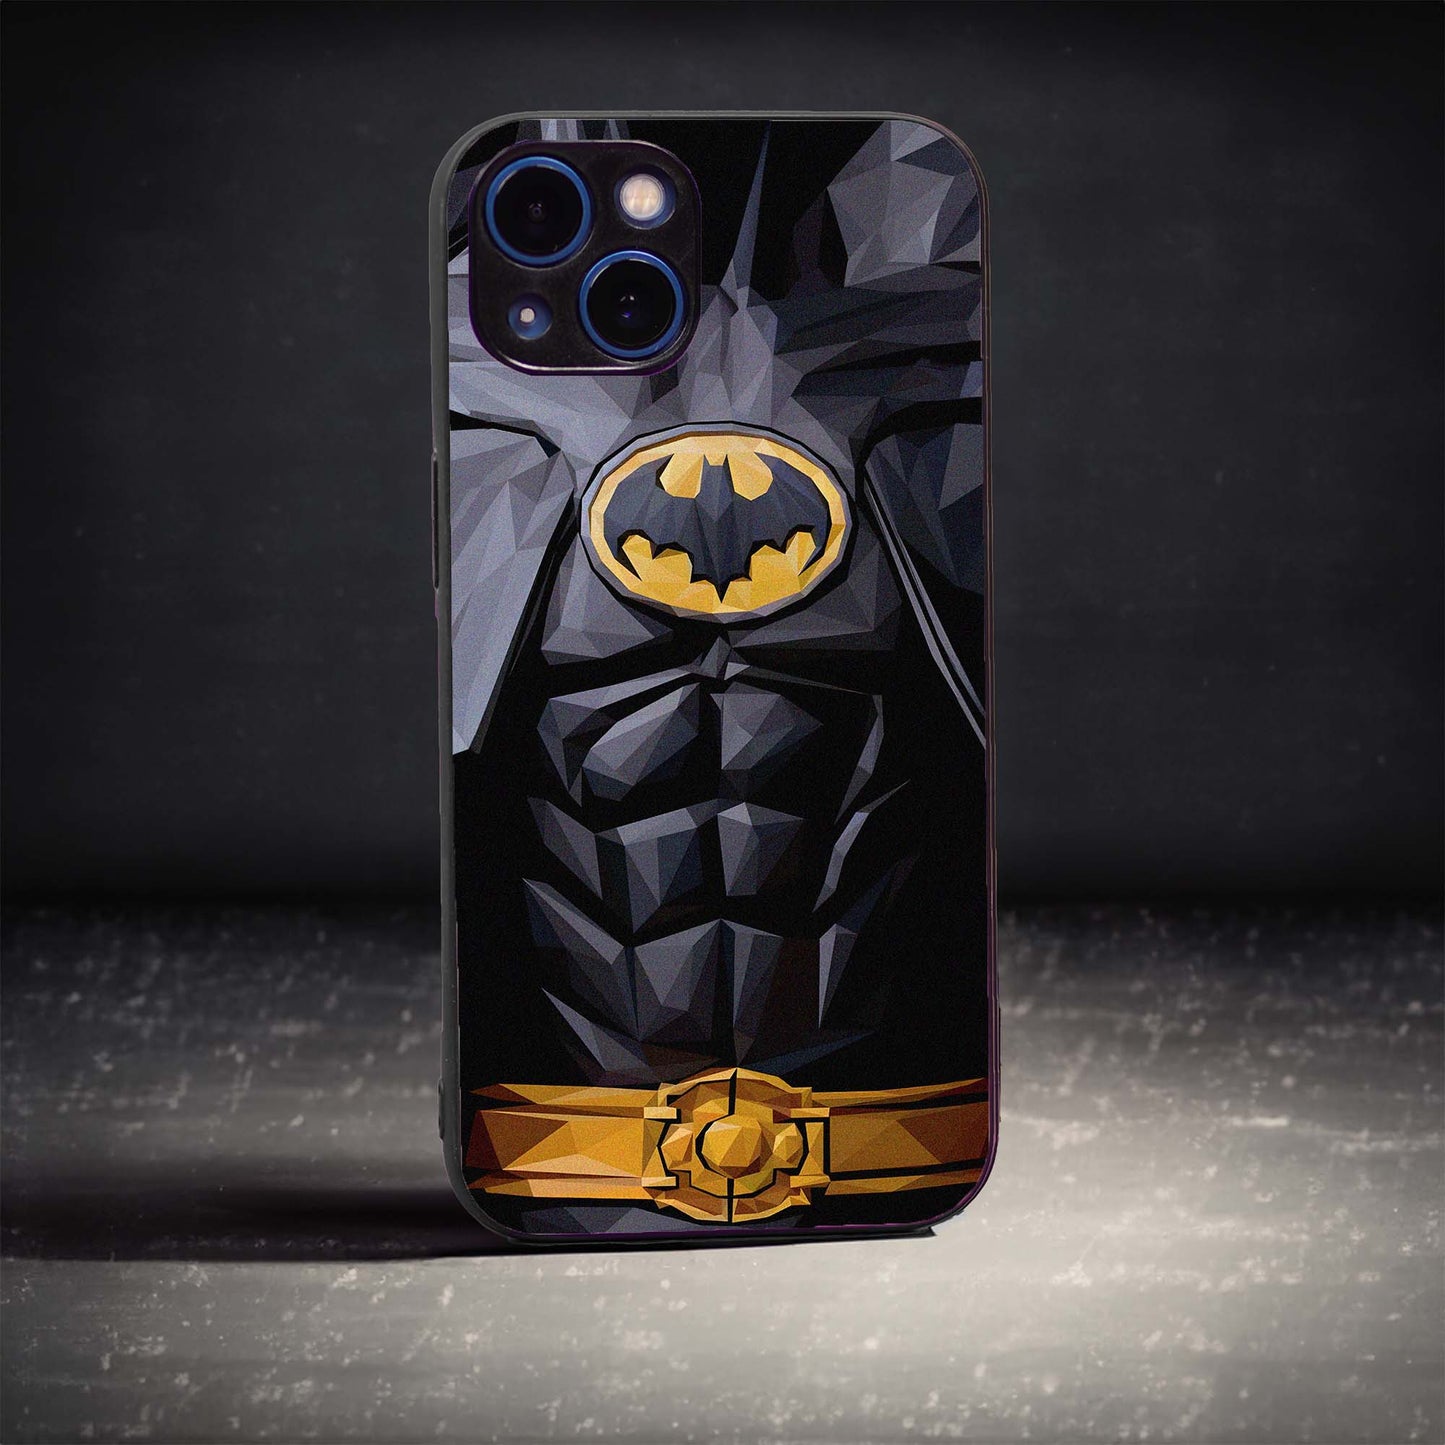 The Batman Suit Case